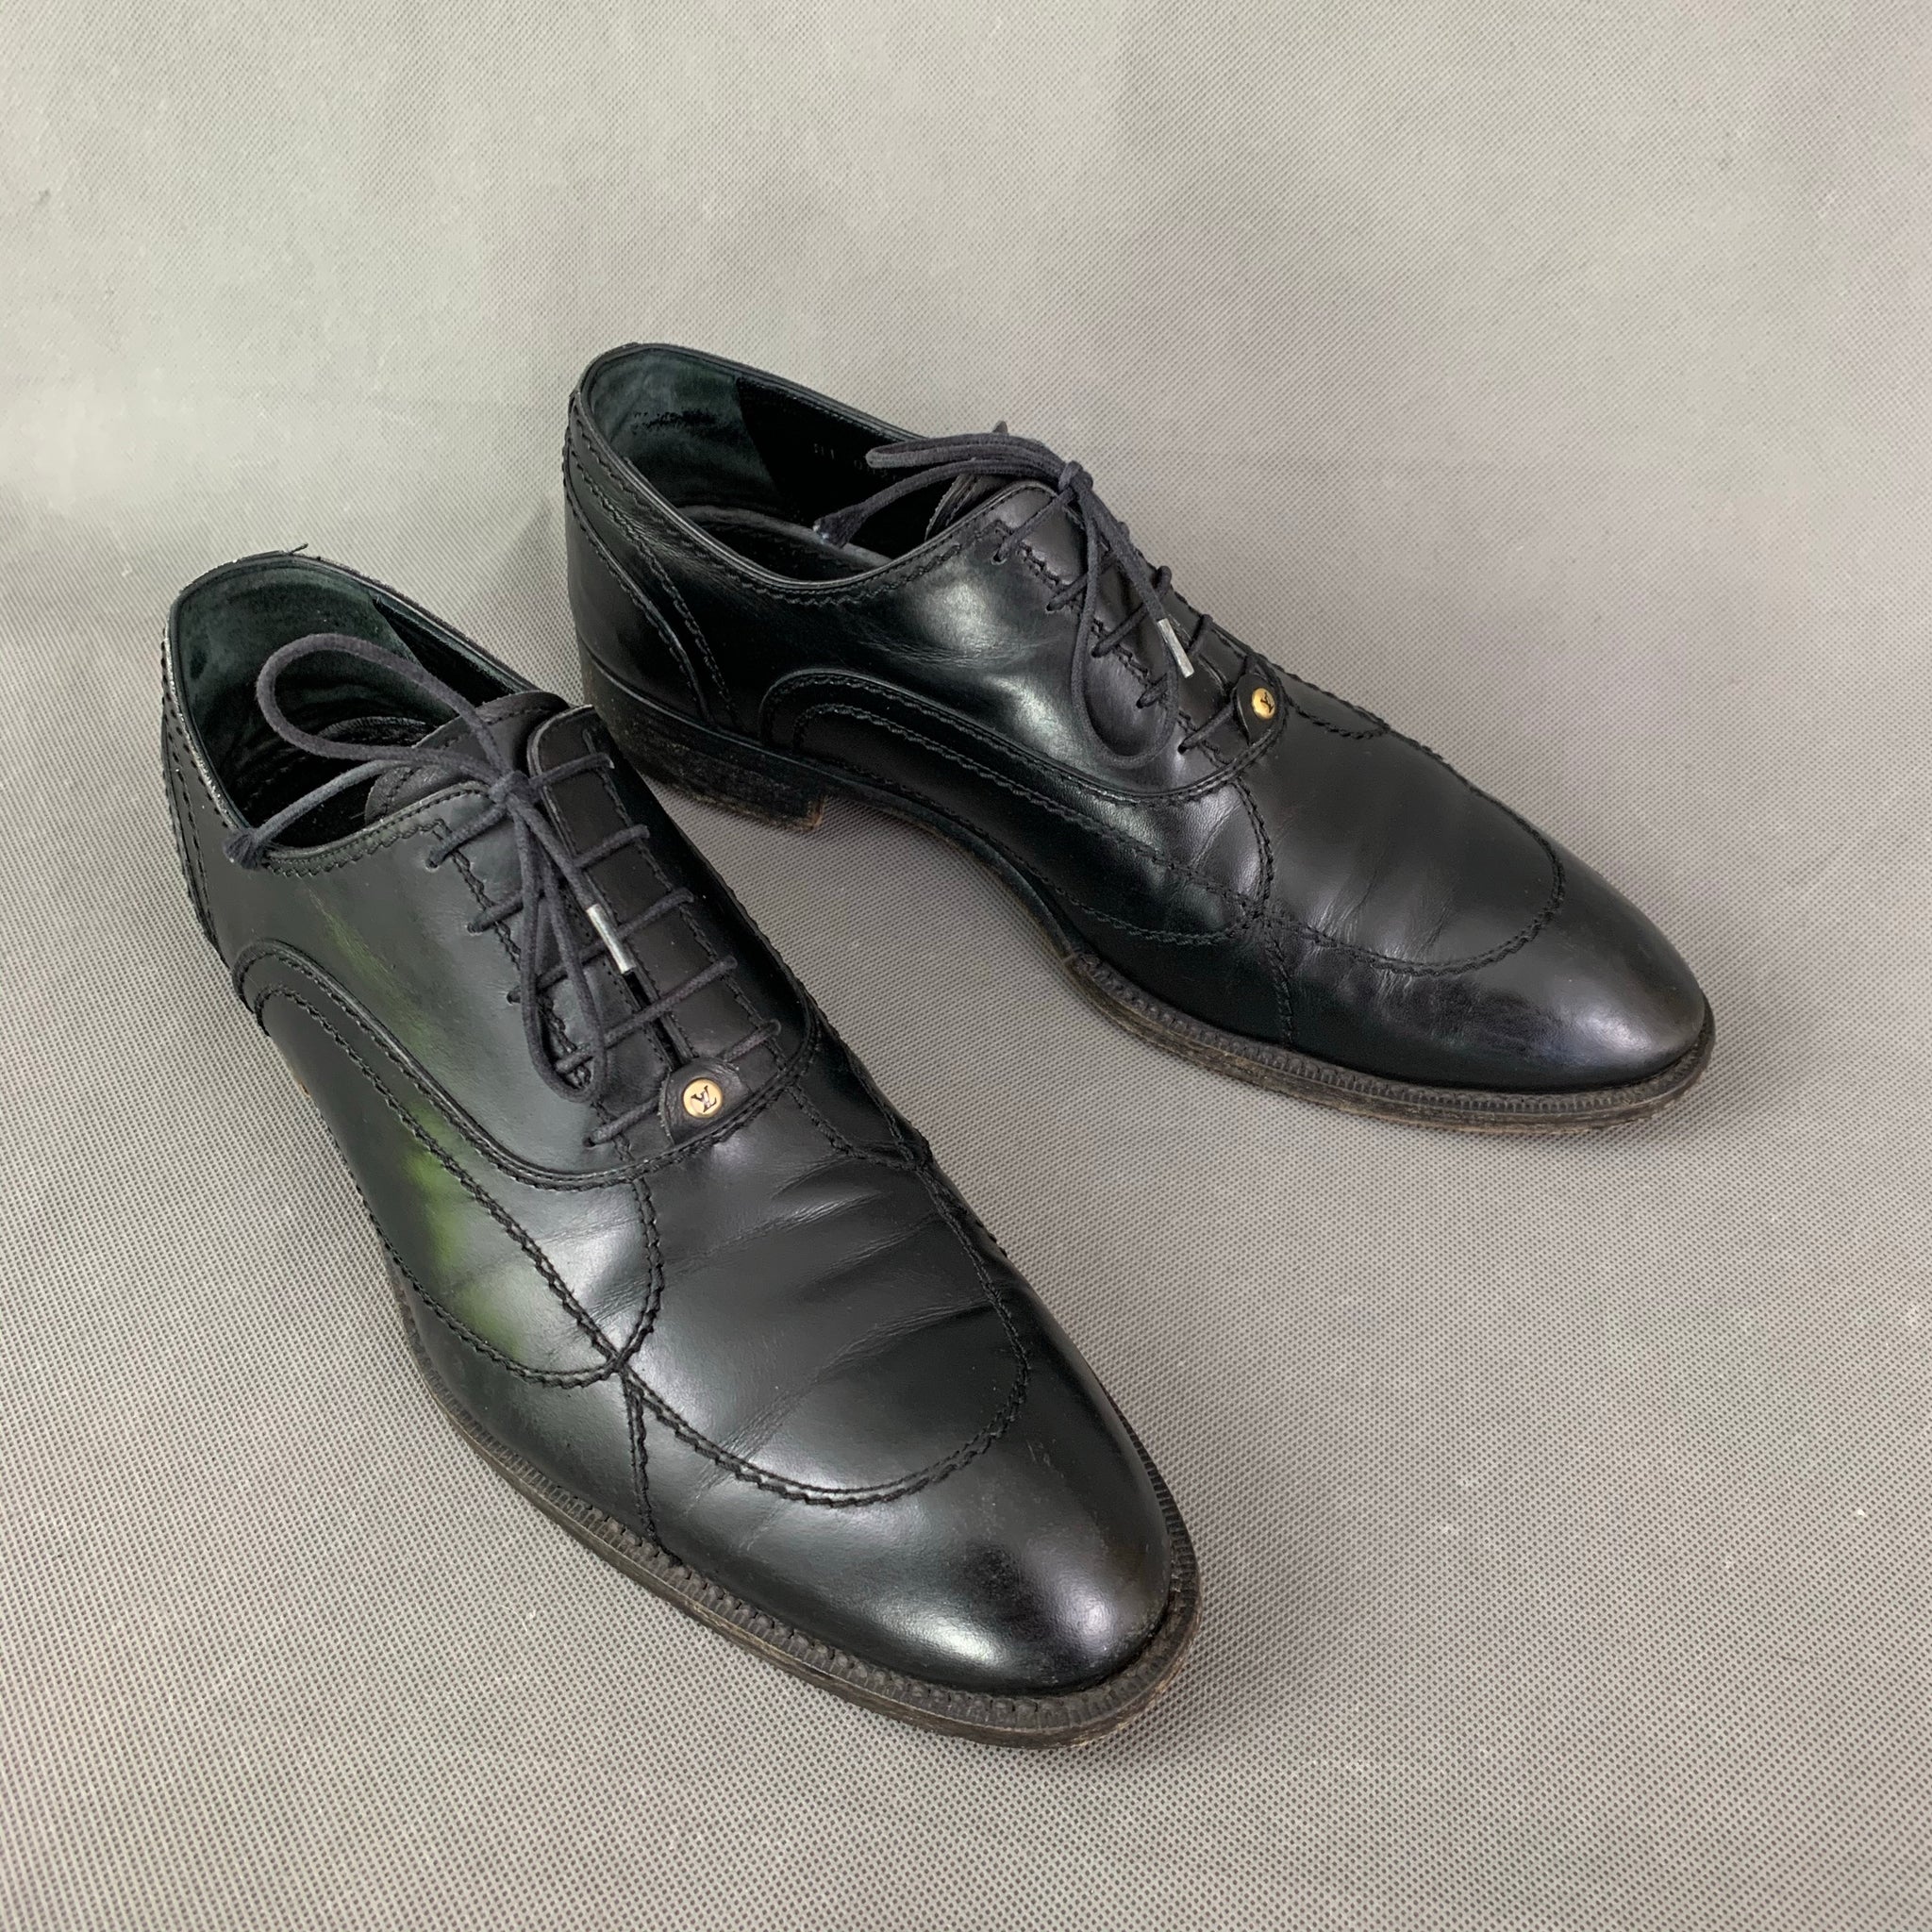 LOUIS VUITTON Mens Black Leather Derby Lace-Up Shoes - Size EU 41